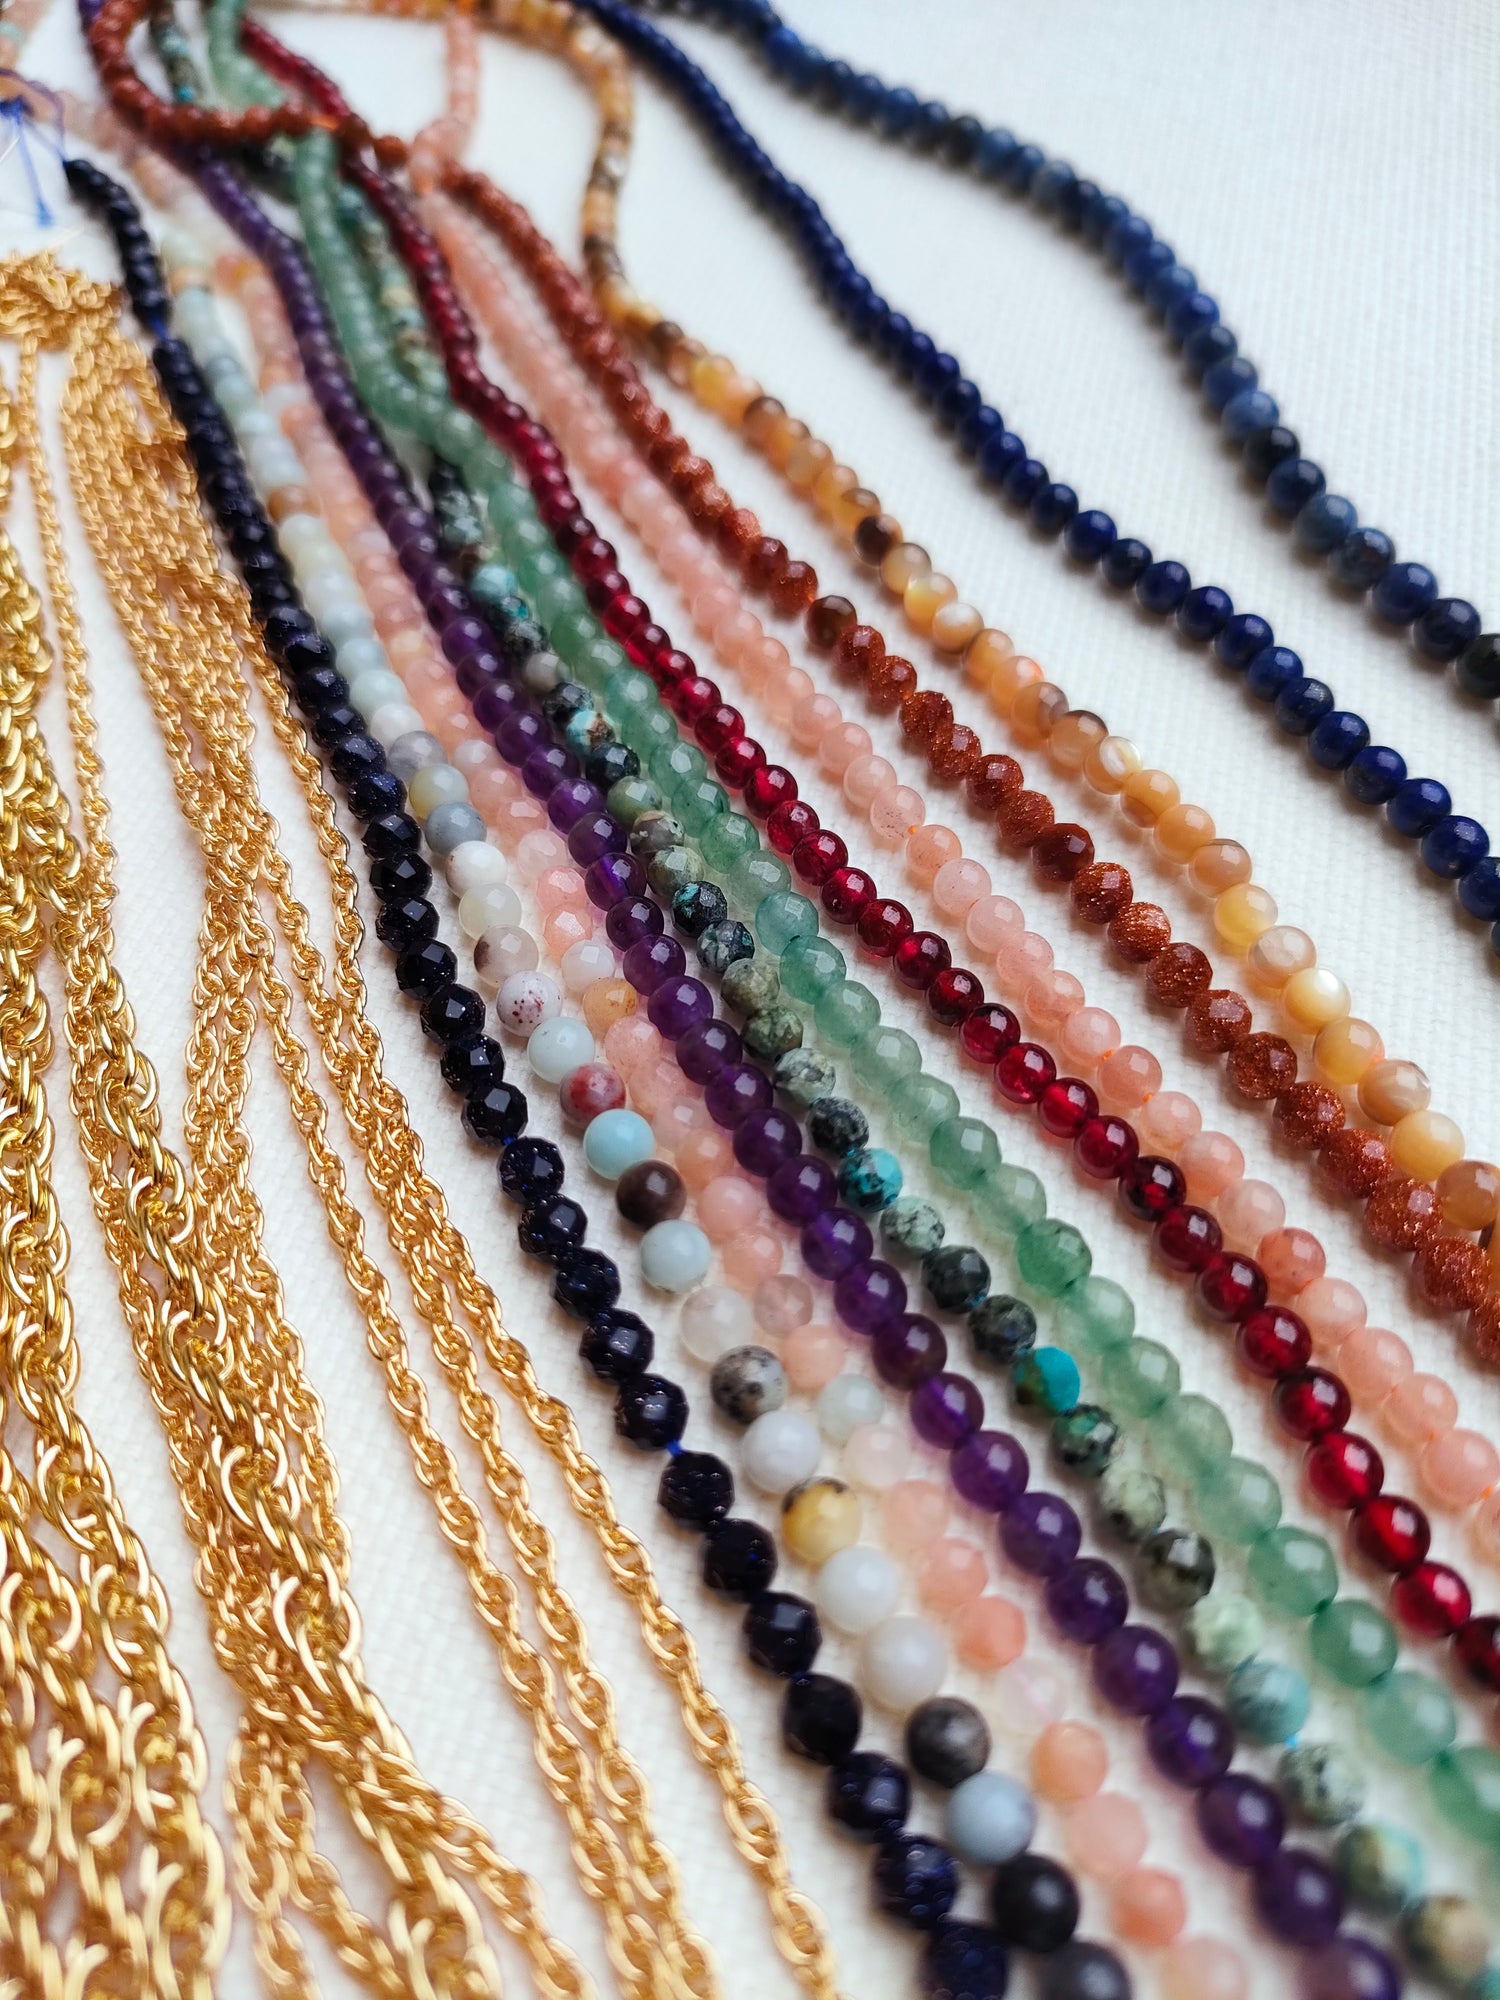 Grand choix de perles en atelier DIY pour fabriquer soi-même son bijou